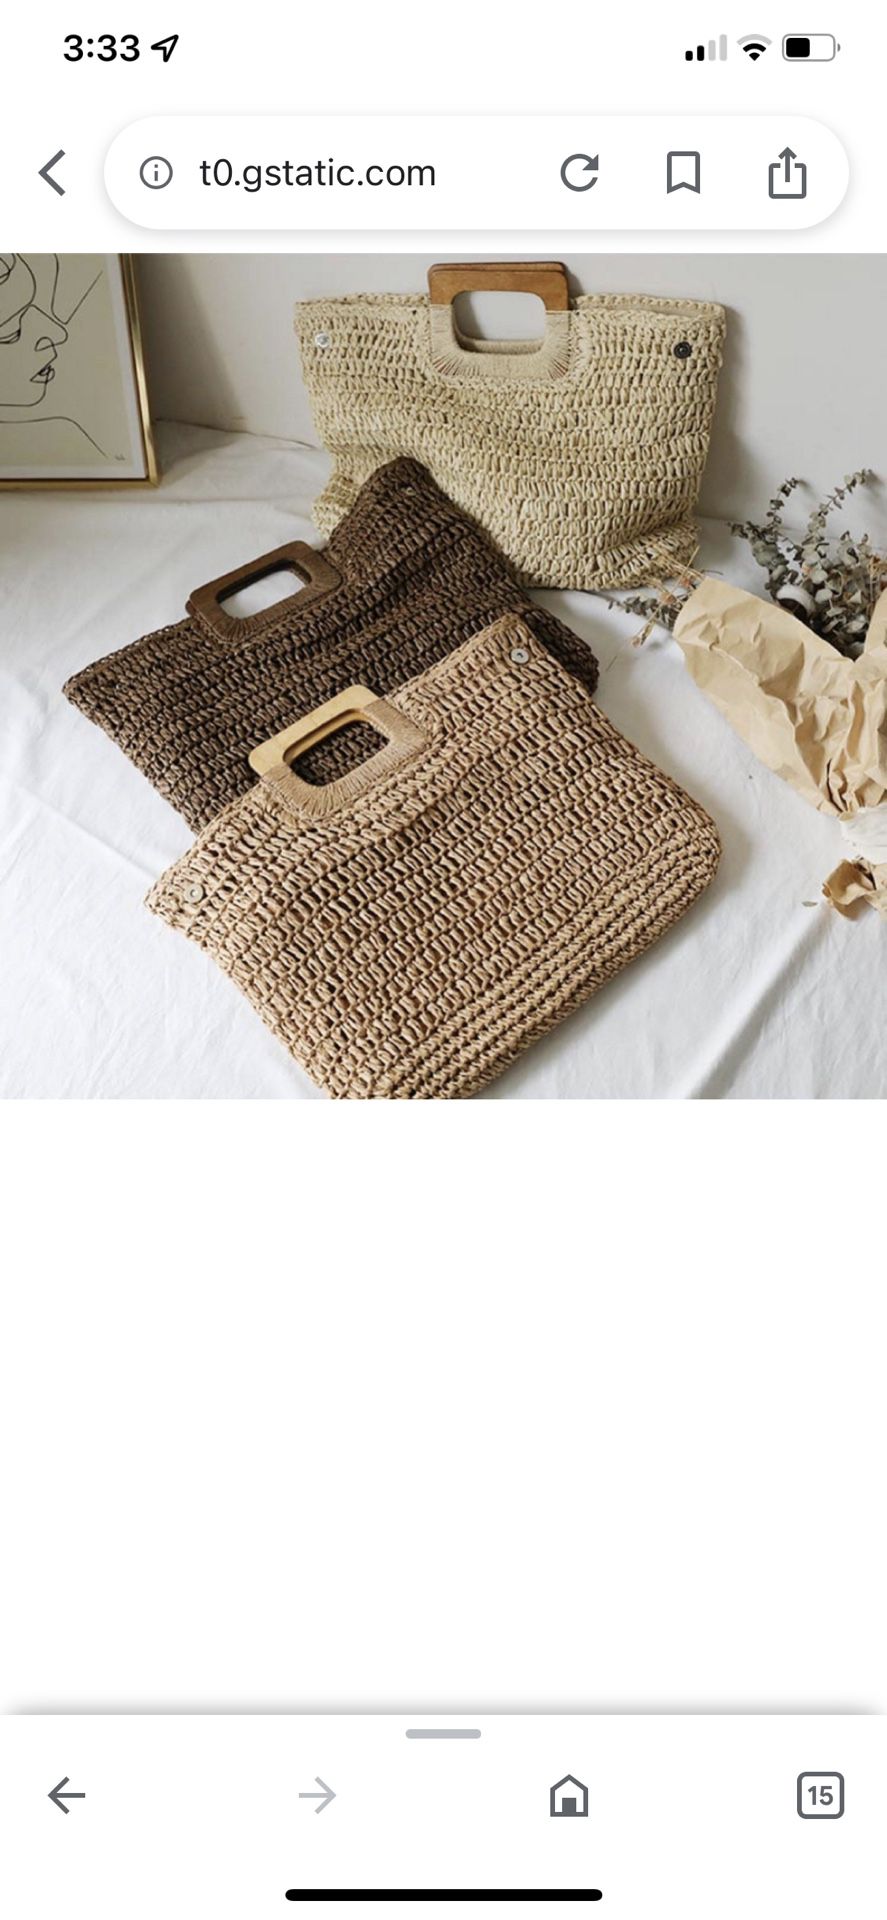 tan woven bag with wood handles